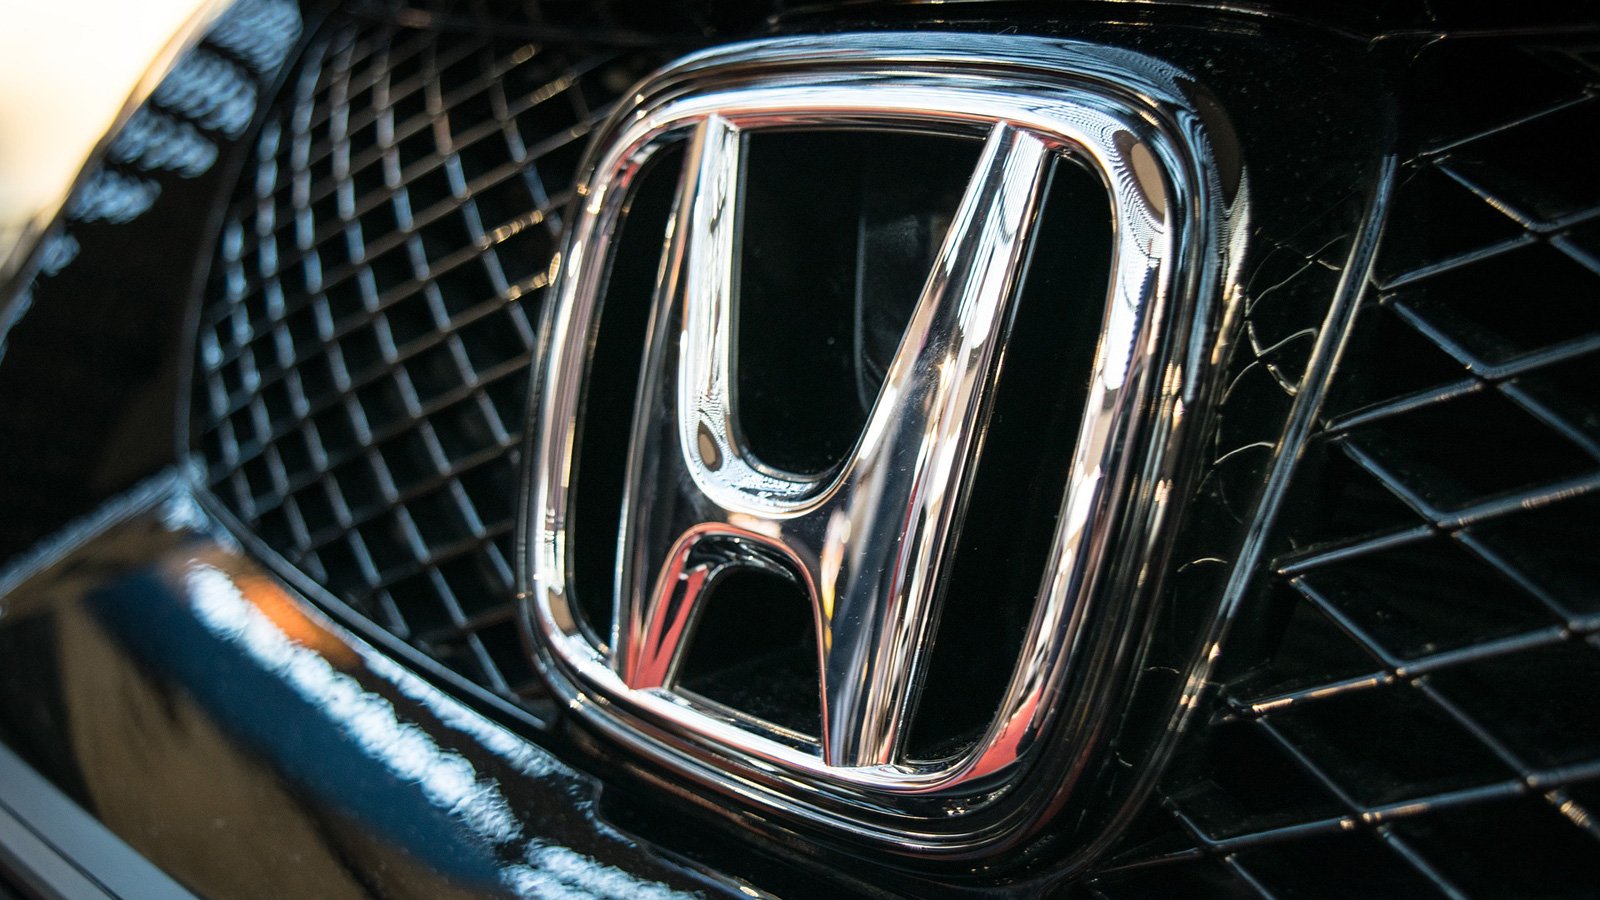 Honda bug’ı, bir bilgisayar korsanının yeniden saldırı yoluyla arabanızın kilidini açıp çalıştırmasını sağlar